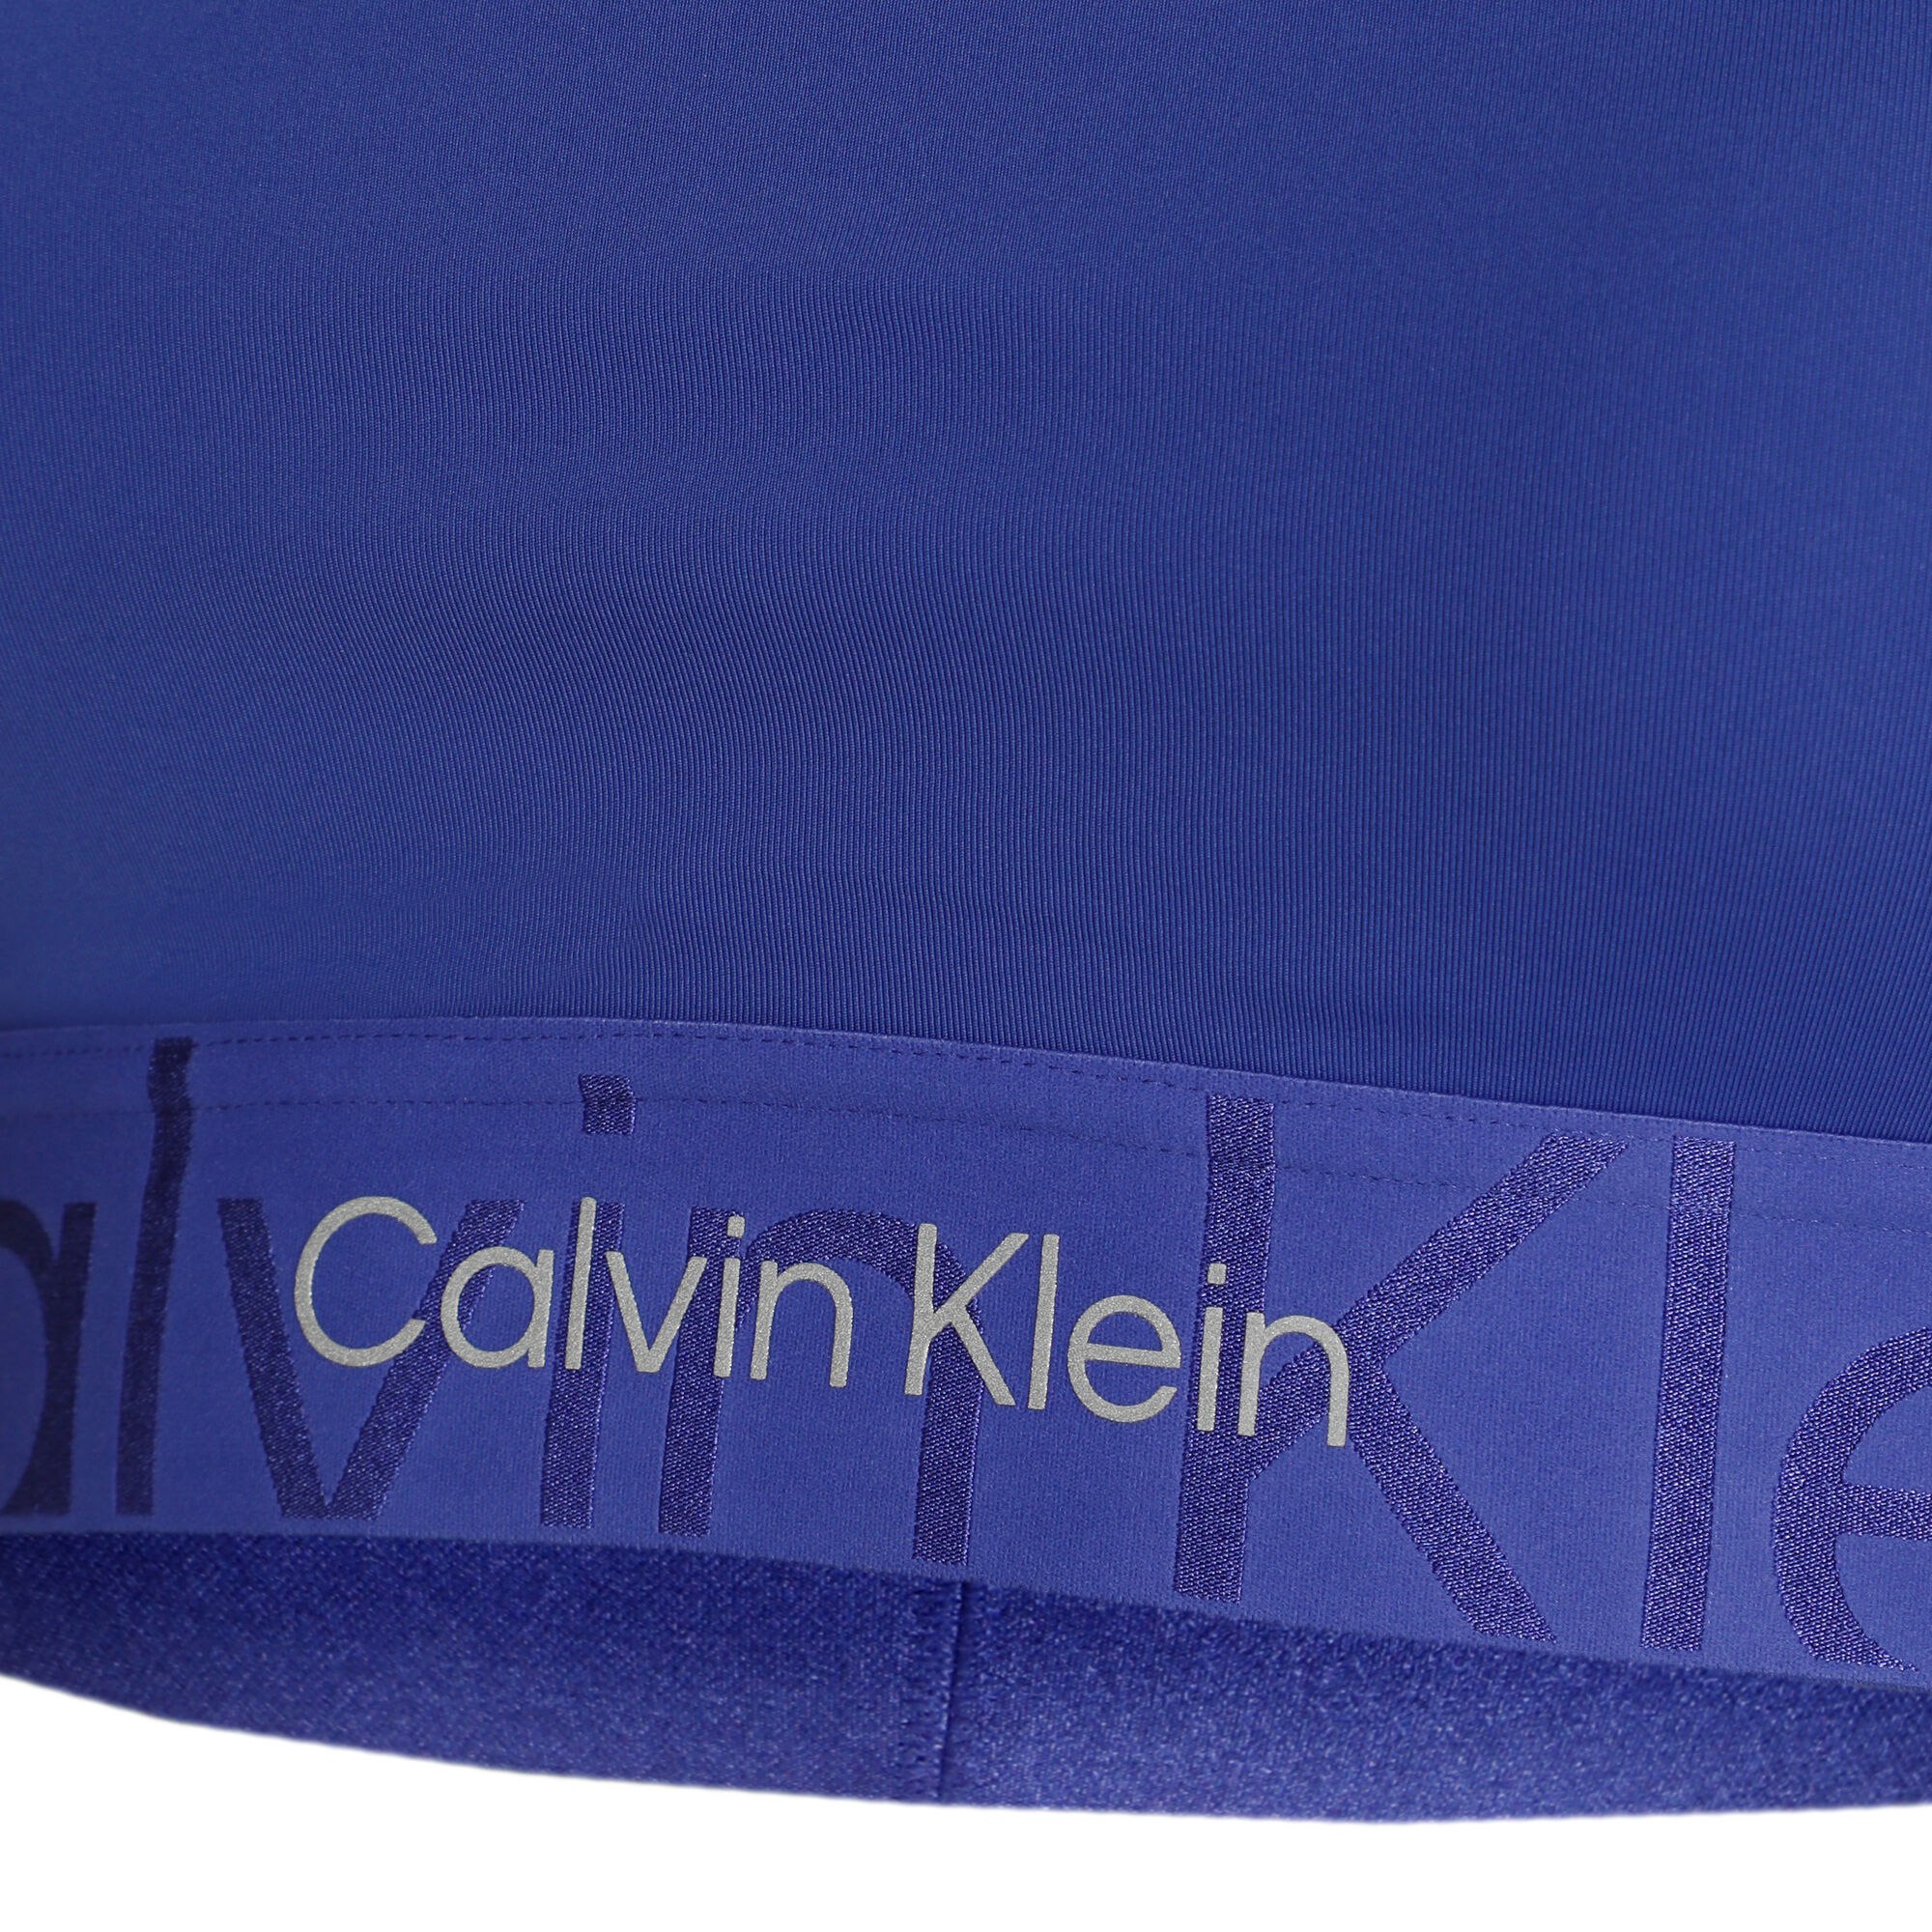 Calvin Klein Underwear - Sport Bra